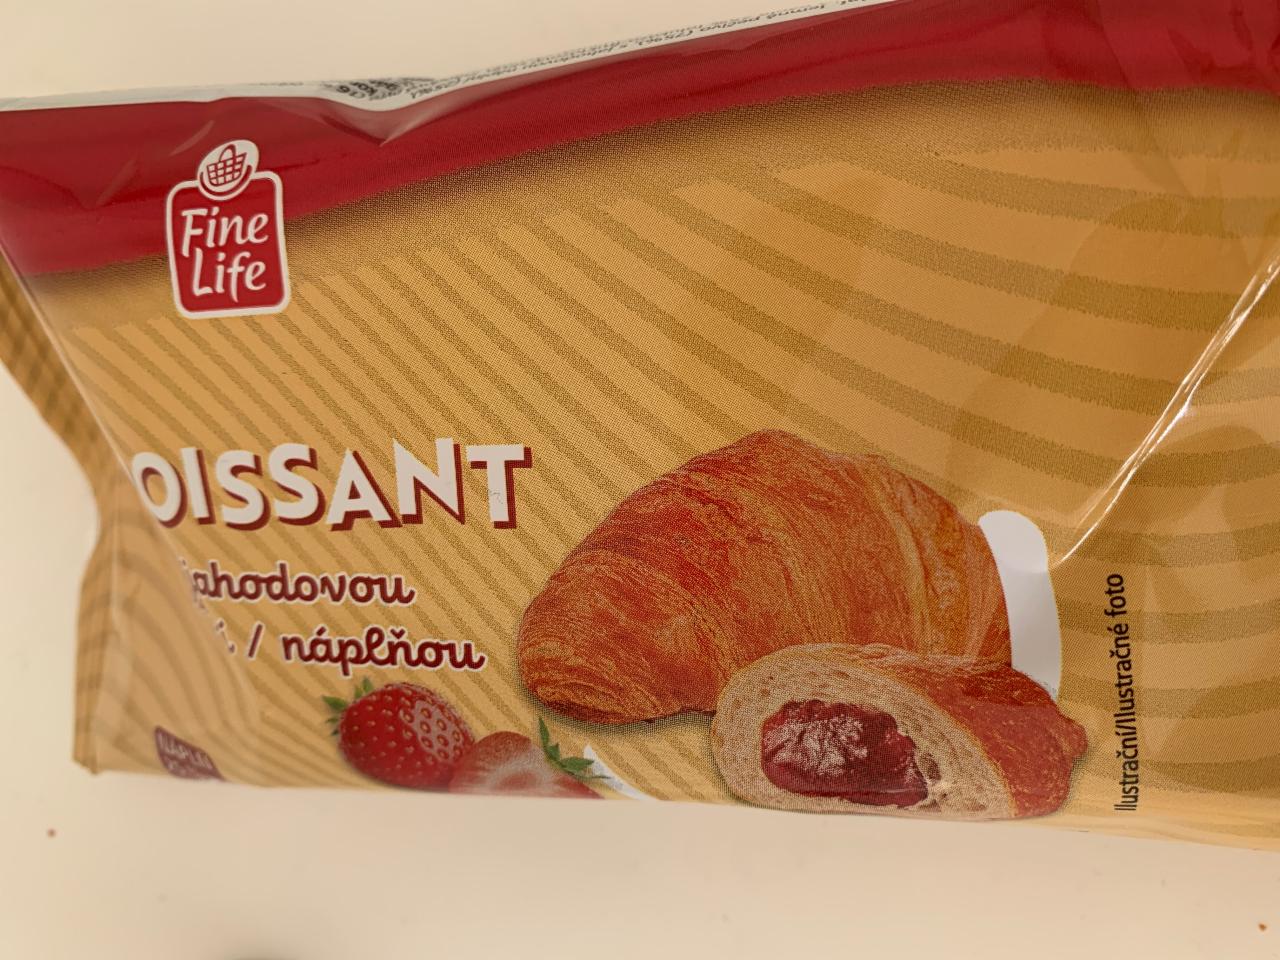 Fotografie - croissant s jahodovou náplňou Fine Life